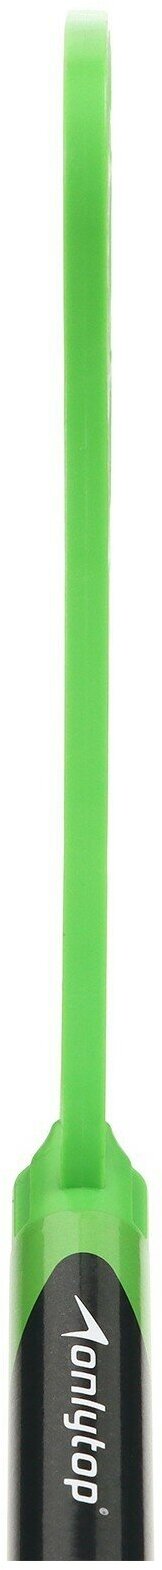 Клюшка для флорбола, детская, 85 см, цвета микс